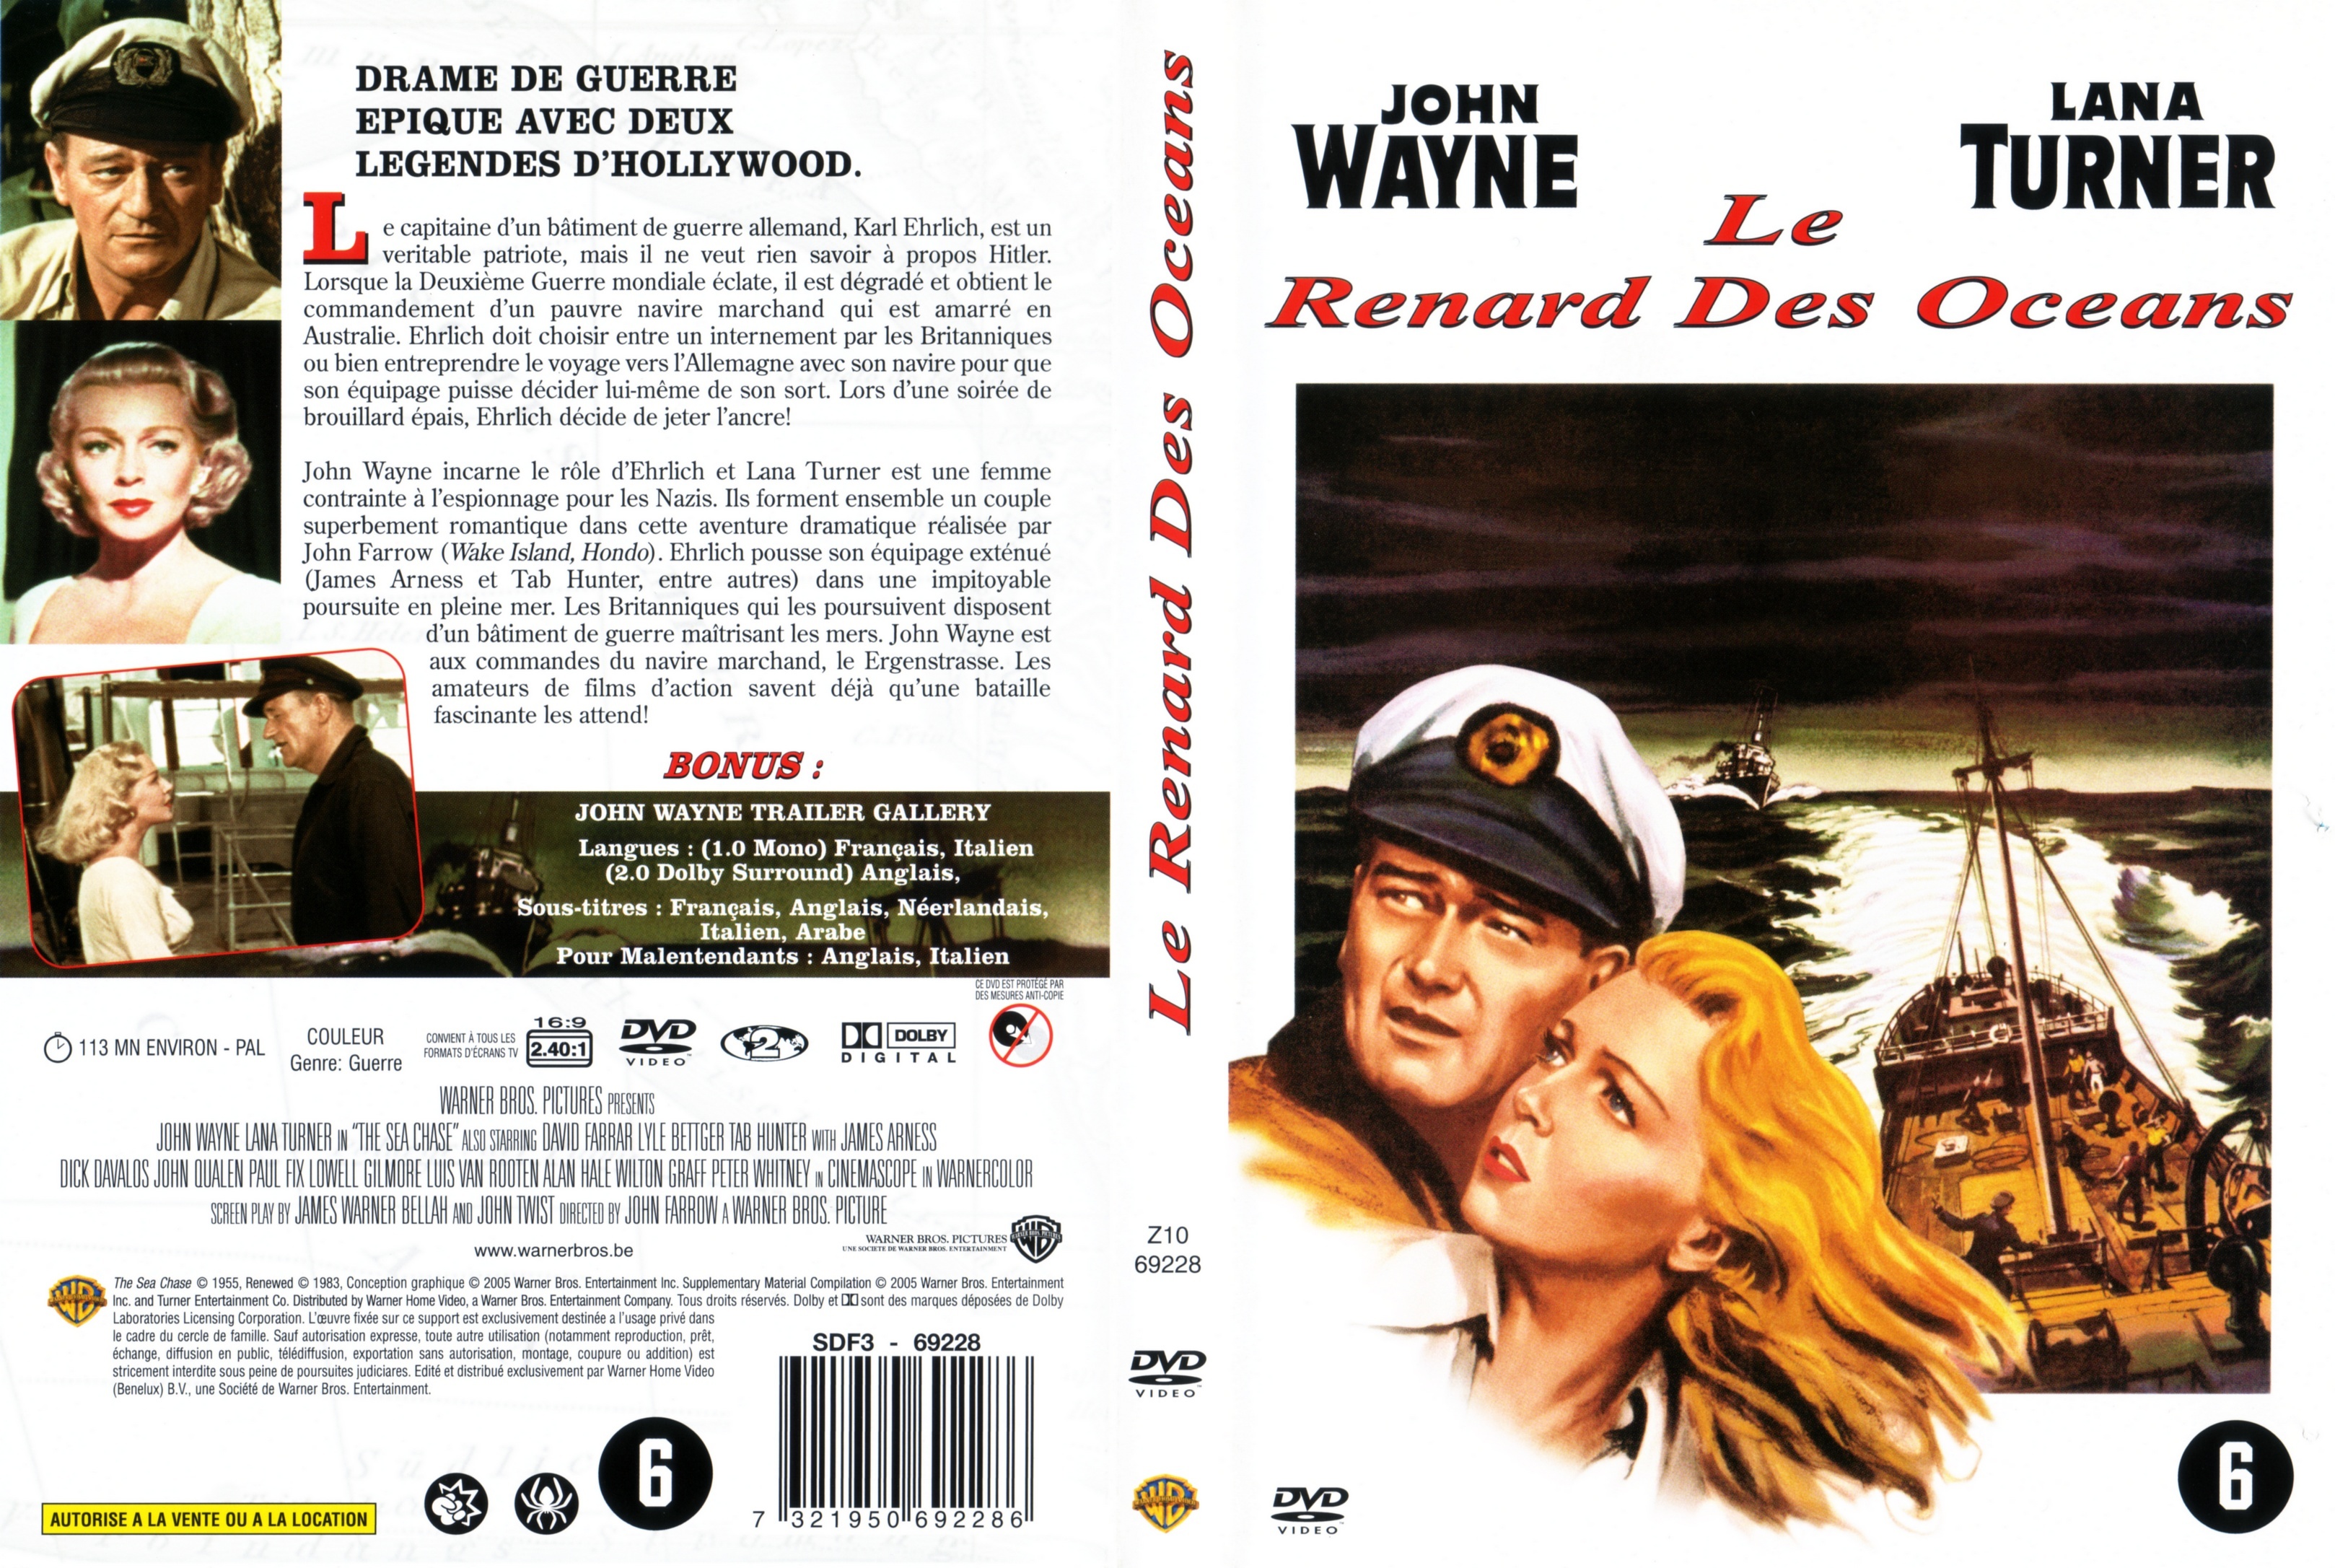 Jaquette DVD Le renard des ocans v2